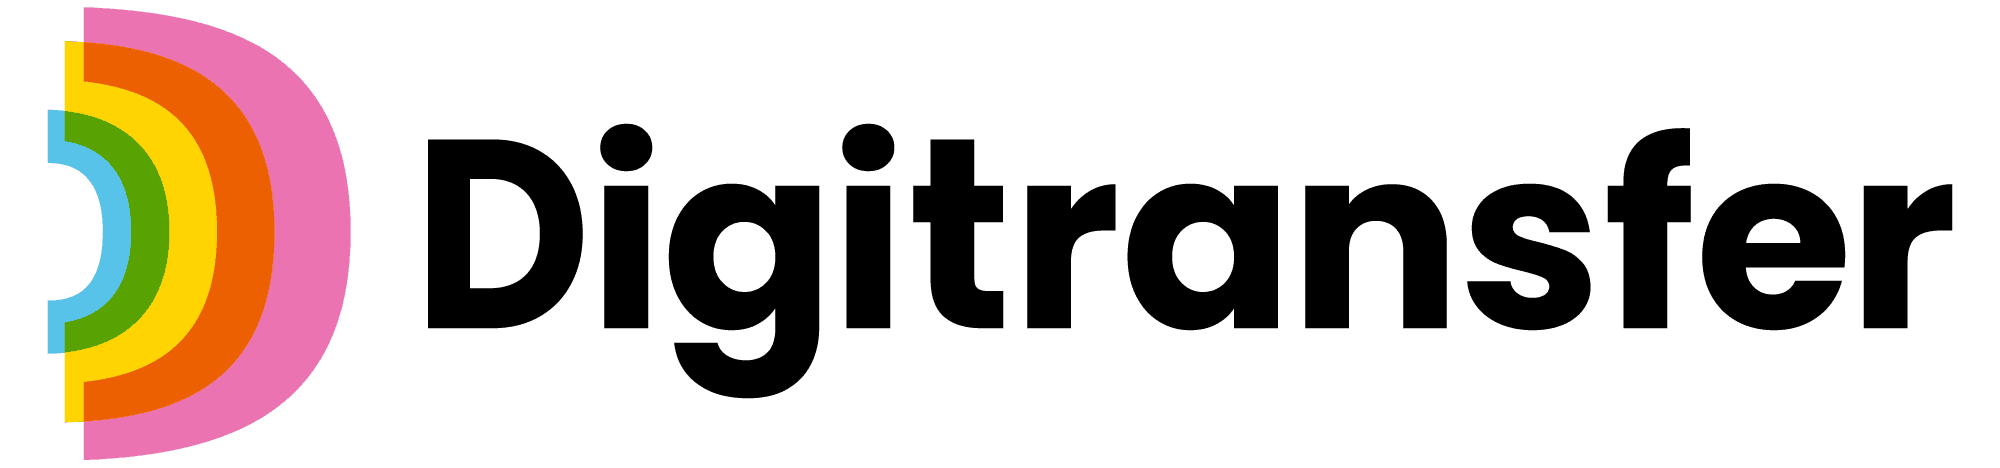 Digitransfer_logo